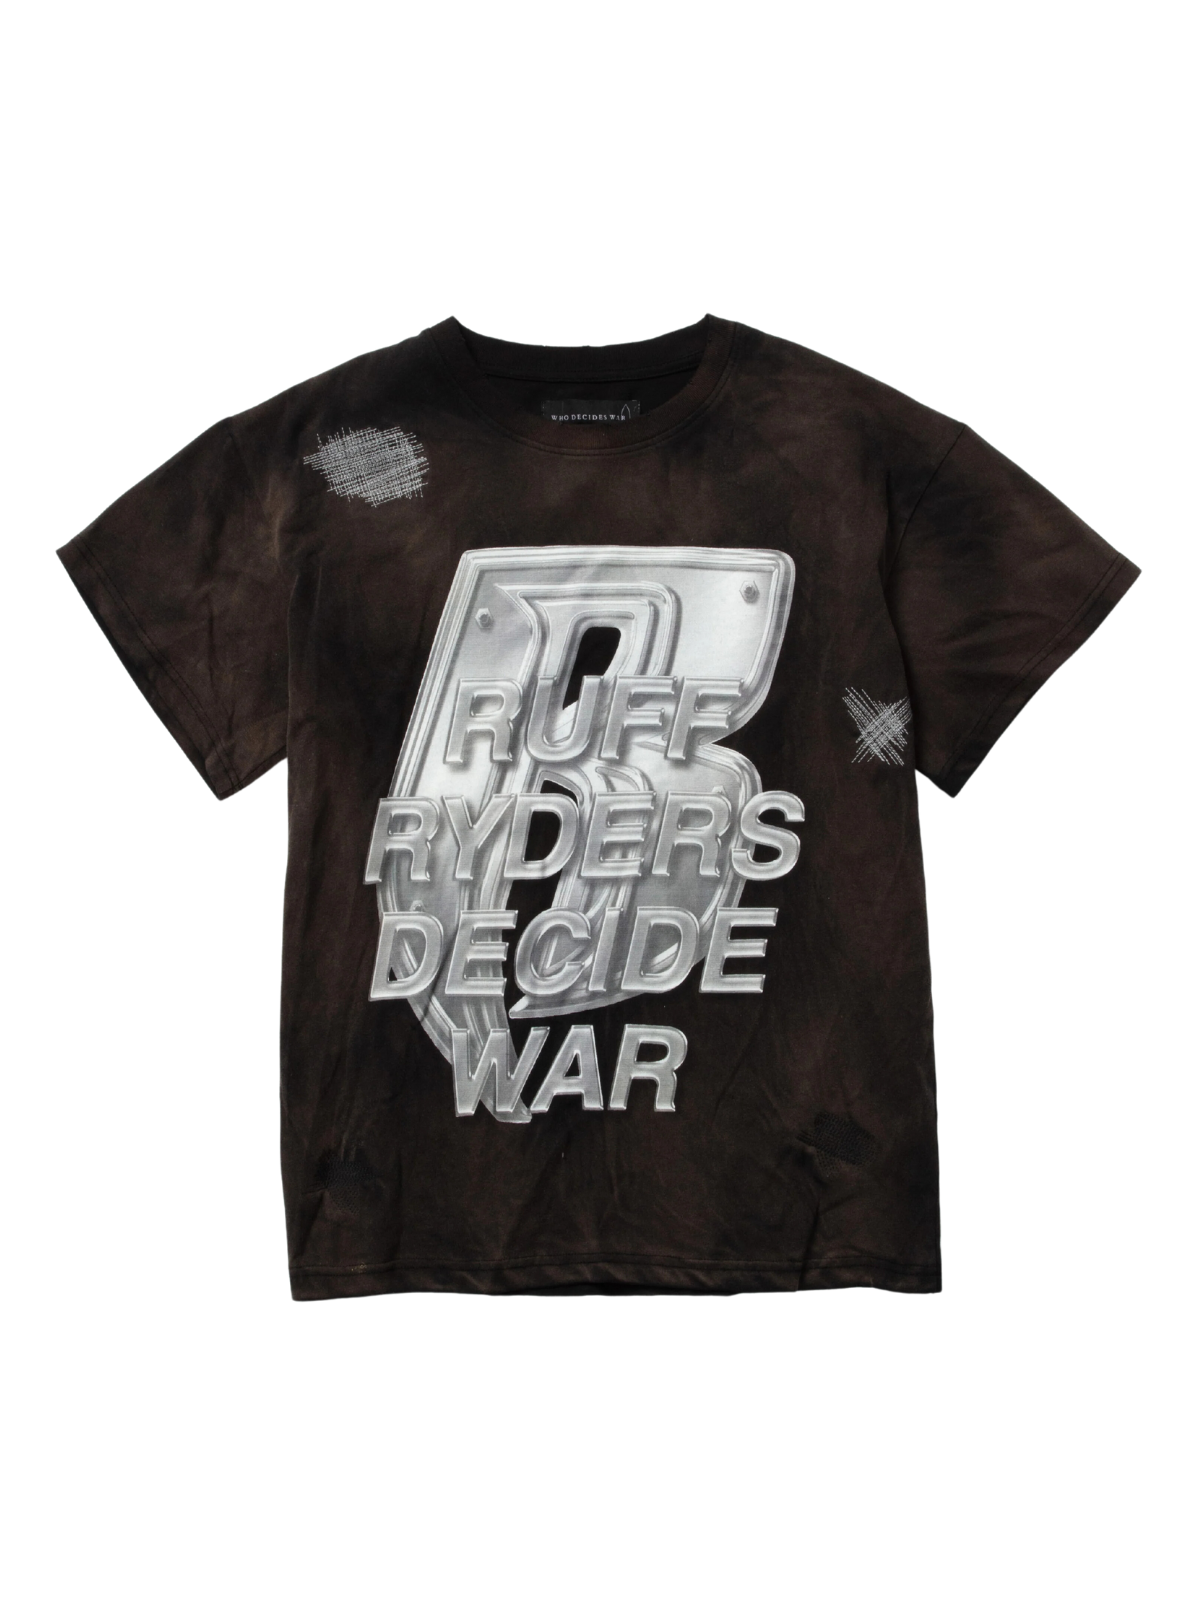 Who Decides War T-Shirt Ruff Ryders Short Sleeve Rust